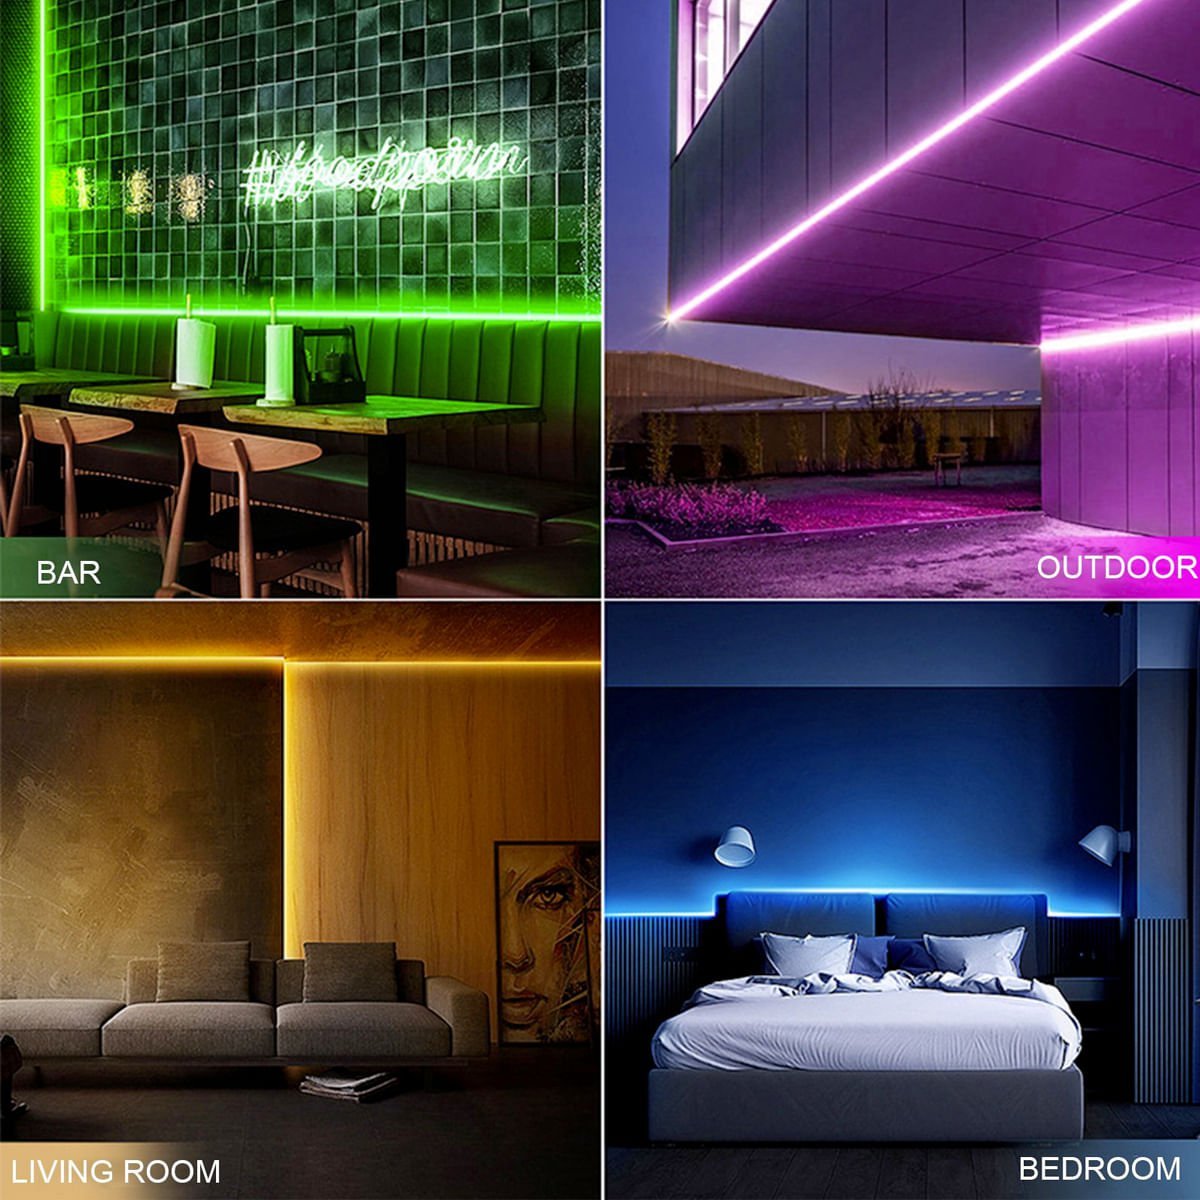 Mangueira Fita Led RGB Neon 12V 5M Flexível + Fonte 5A RGB - 4